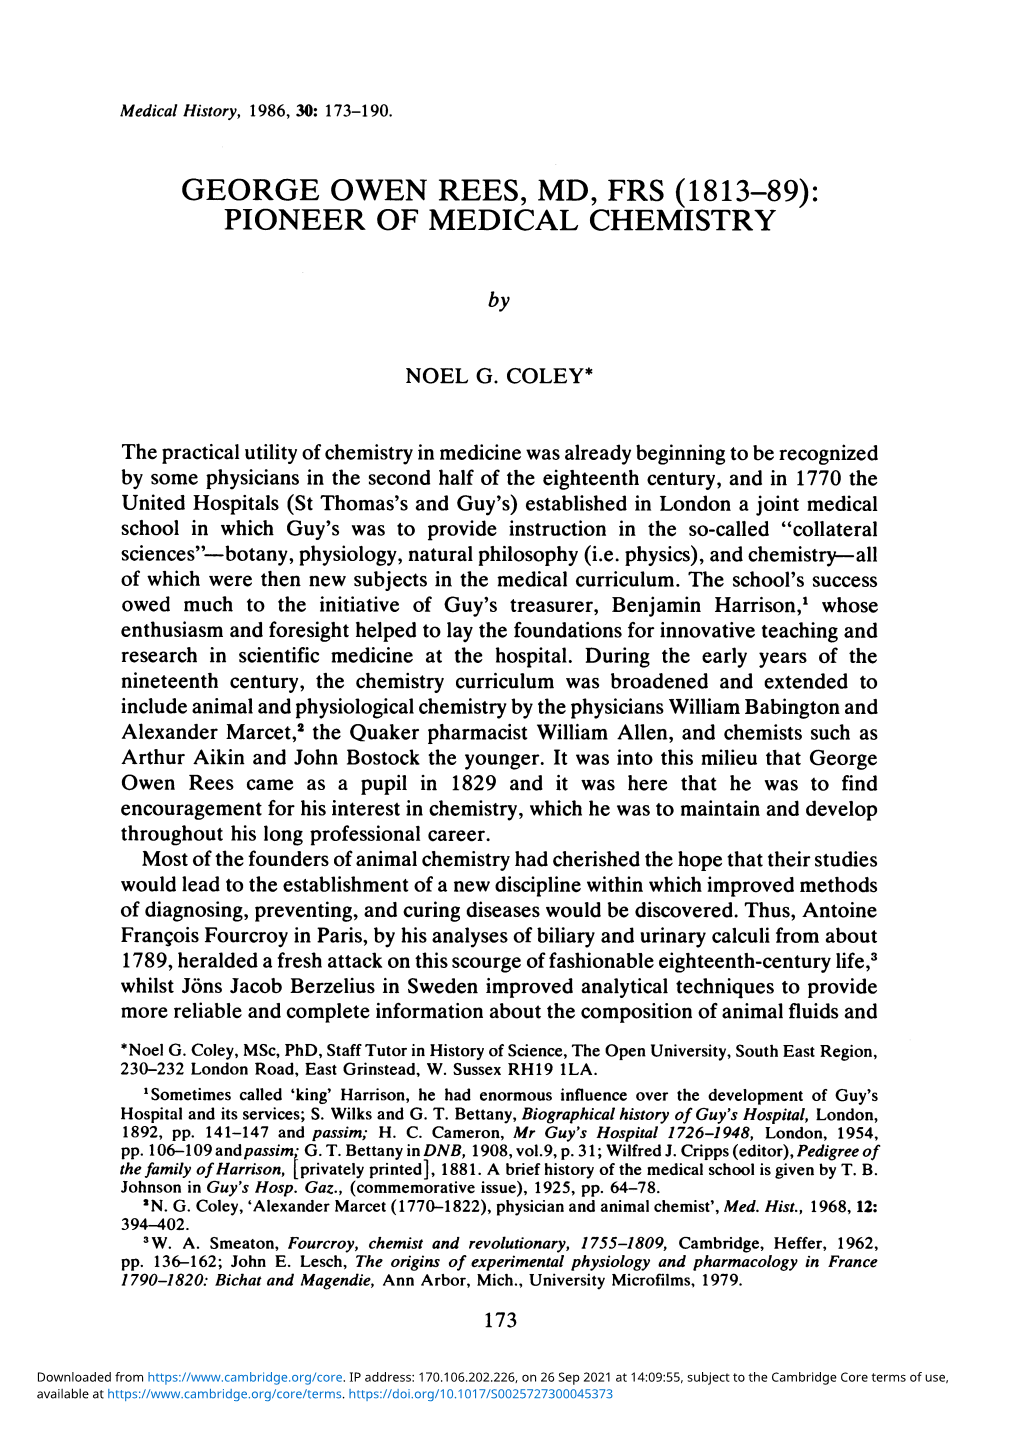 George Owen Rees, Md, Frs (1813-89): Pioneer of Medical Chemistry